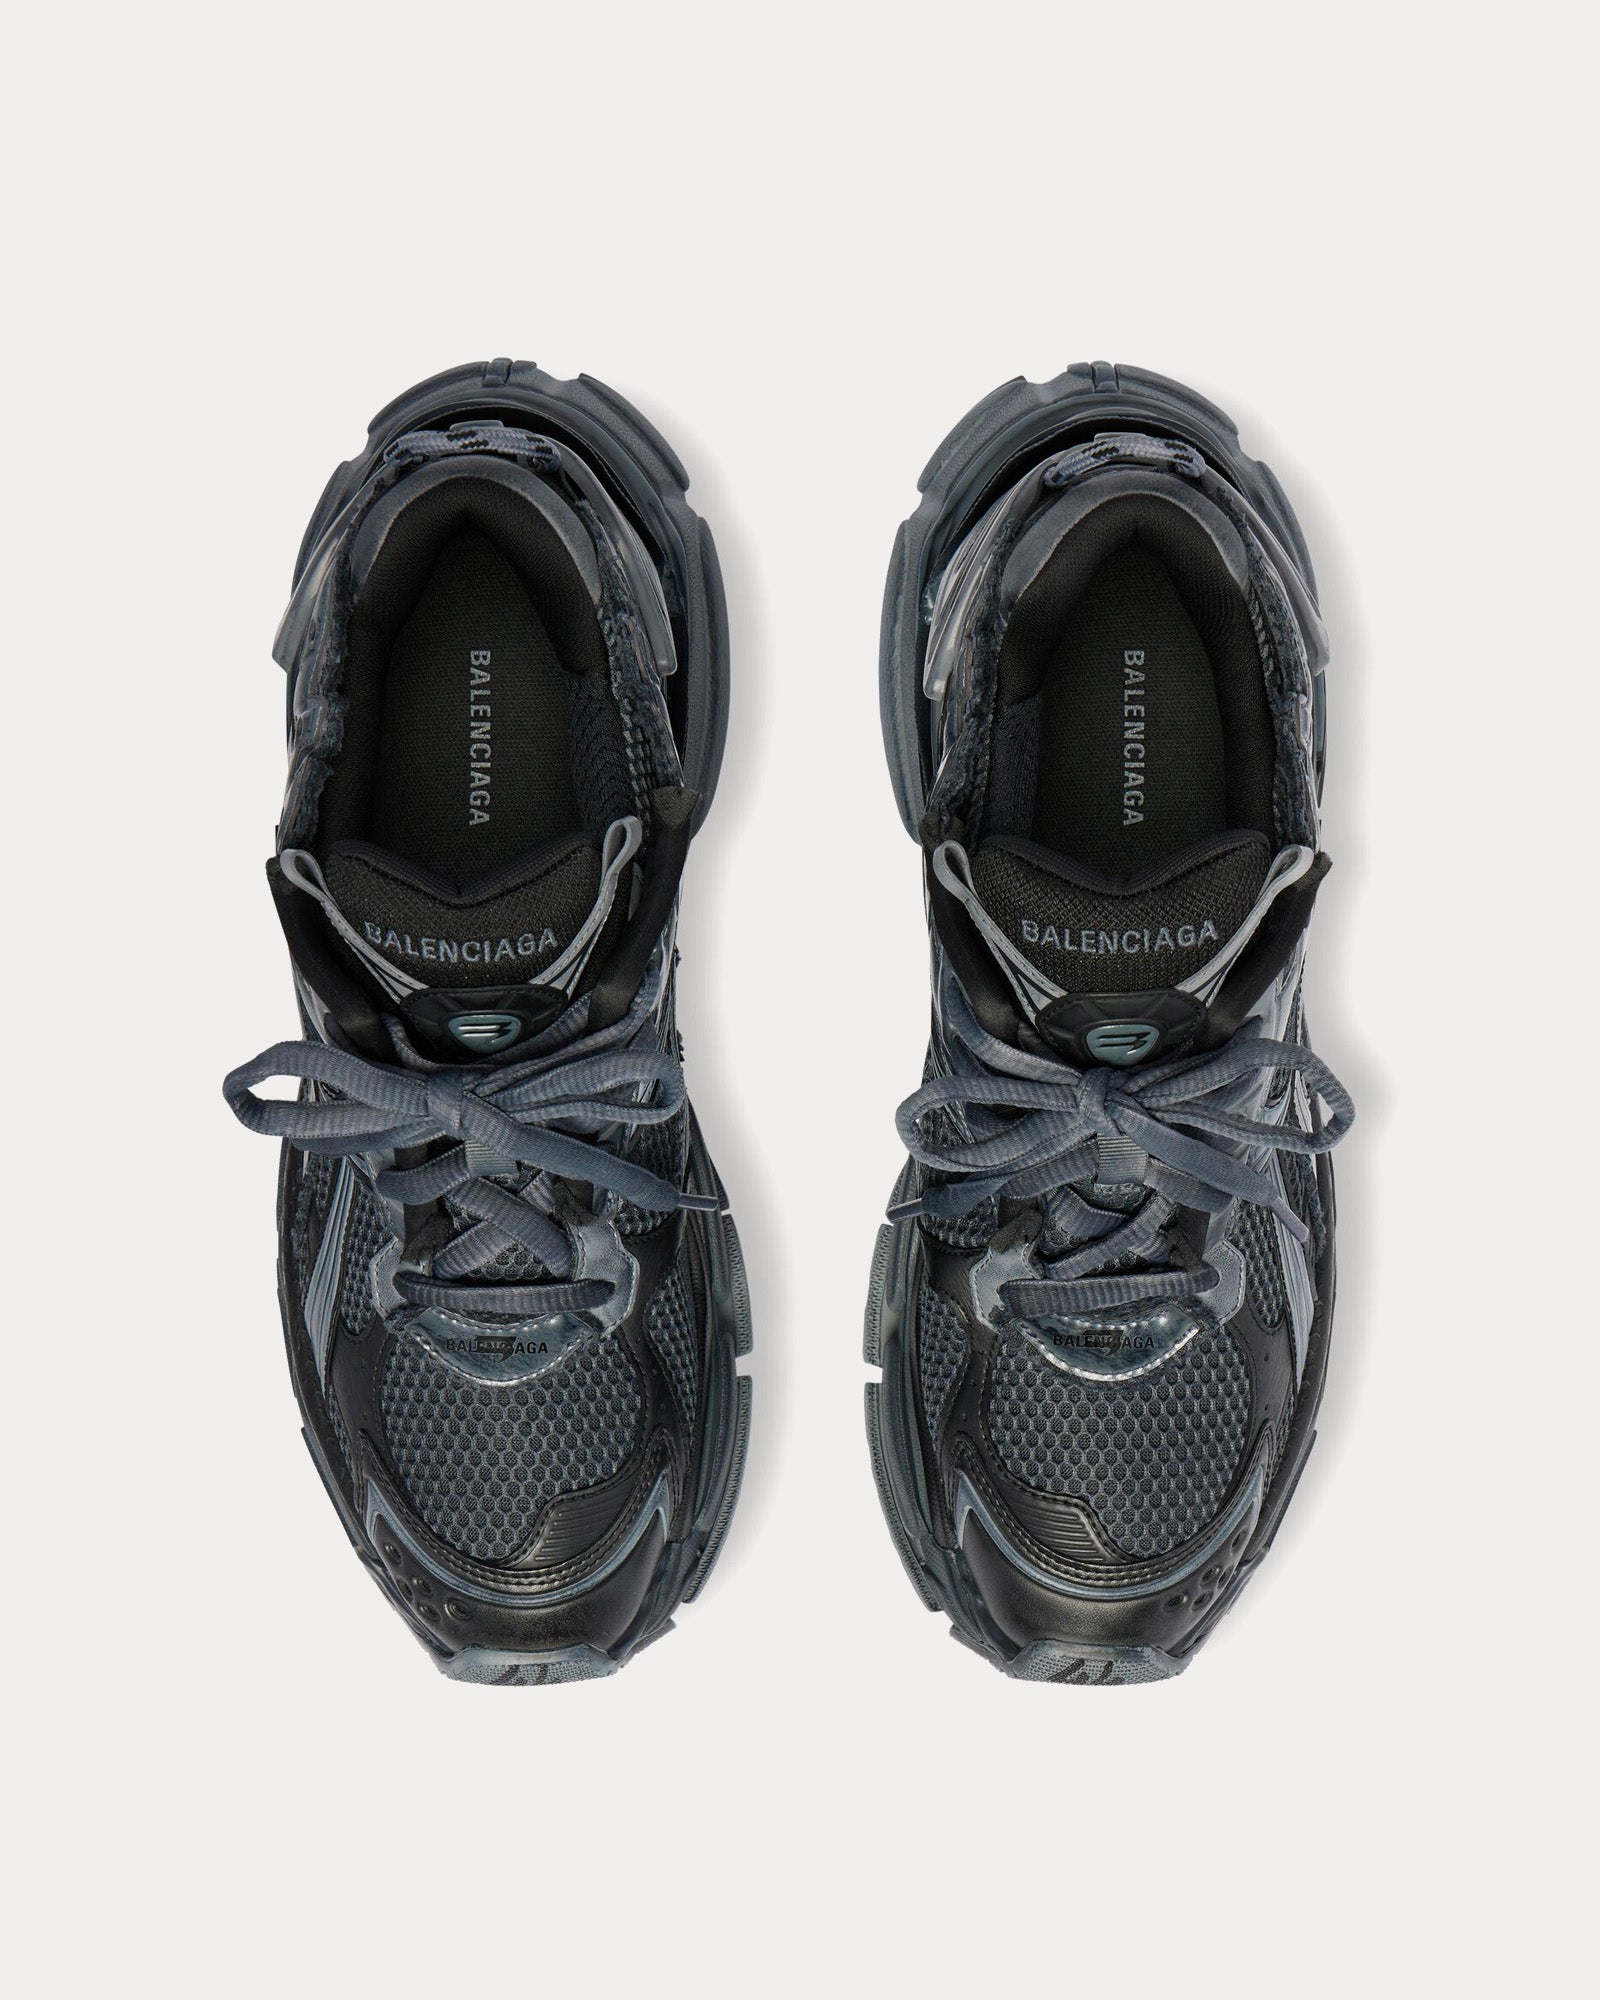 Balenciaga - Runner Mesh & Nylon Dark Grey / Black Low Top Sneakers